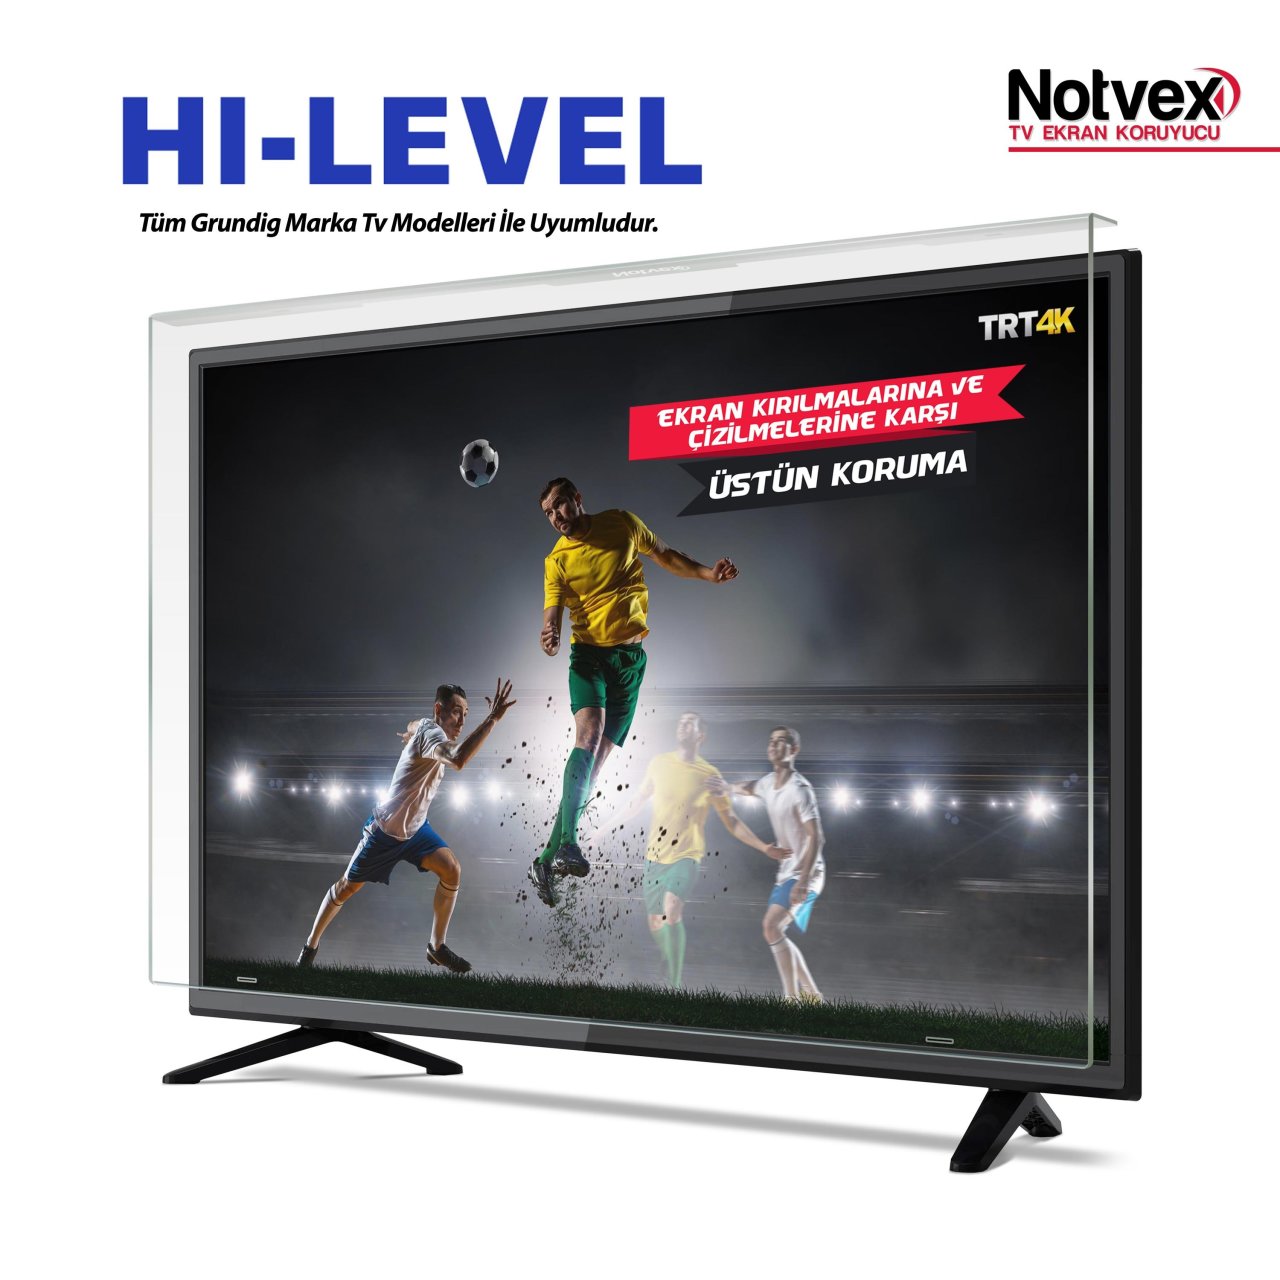 Hi-Level 39HL500 Uyumlu TV Ekran Koruyucu